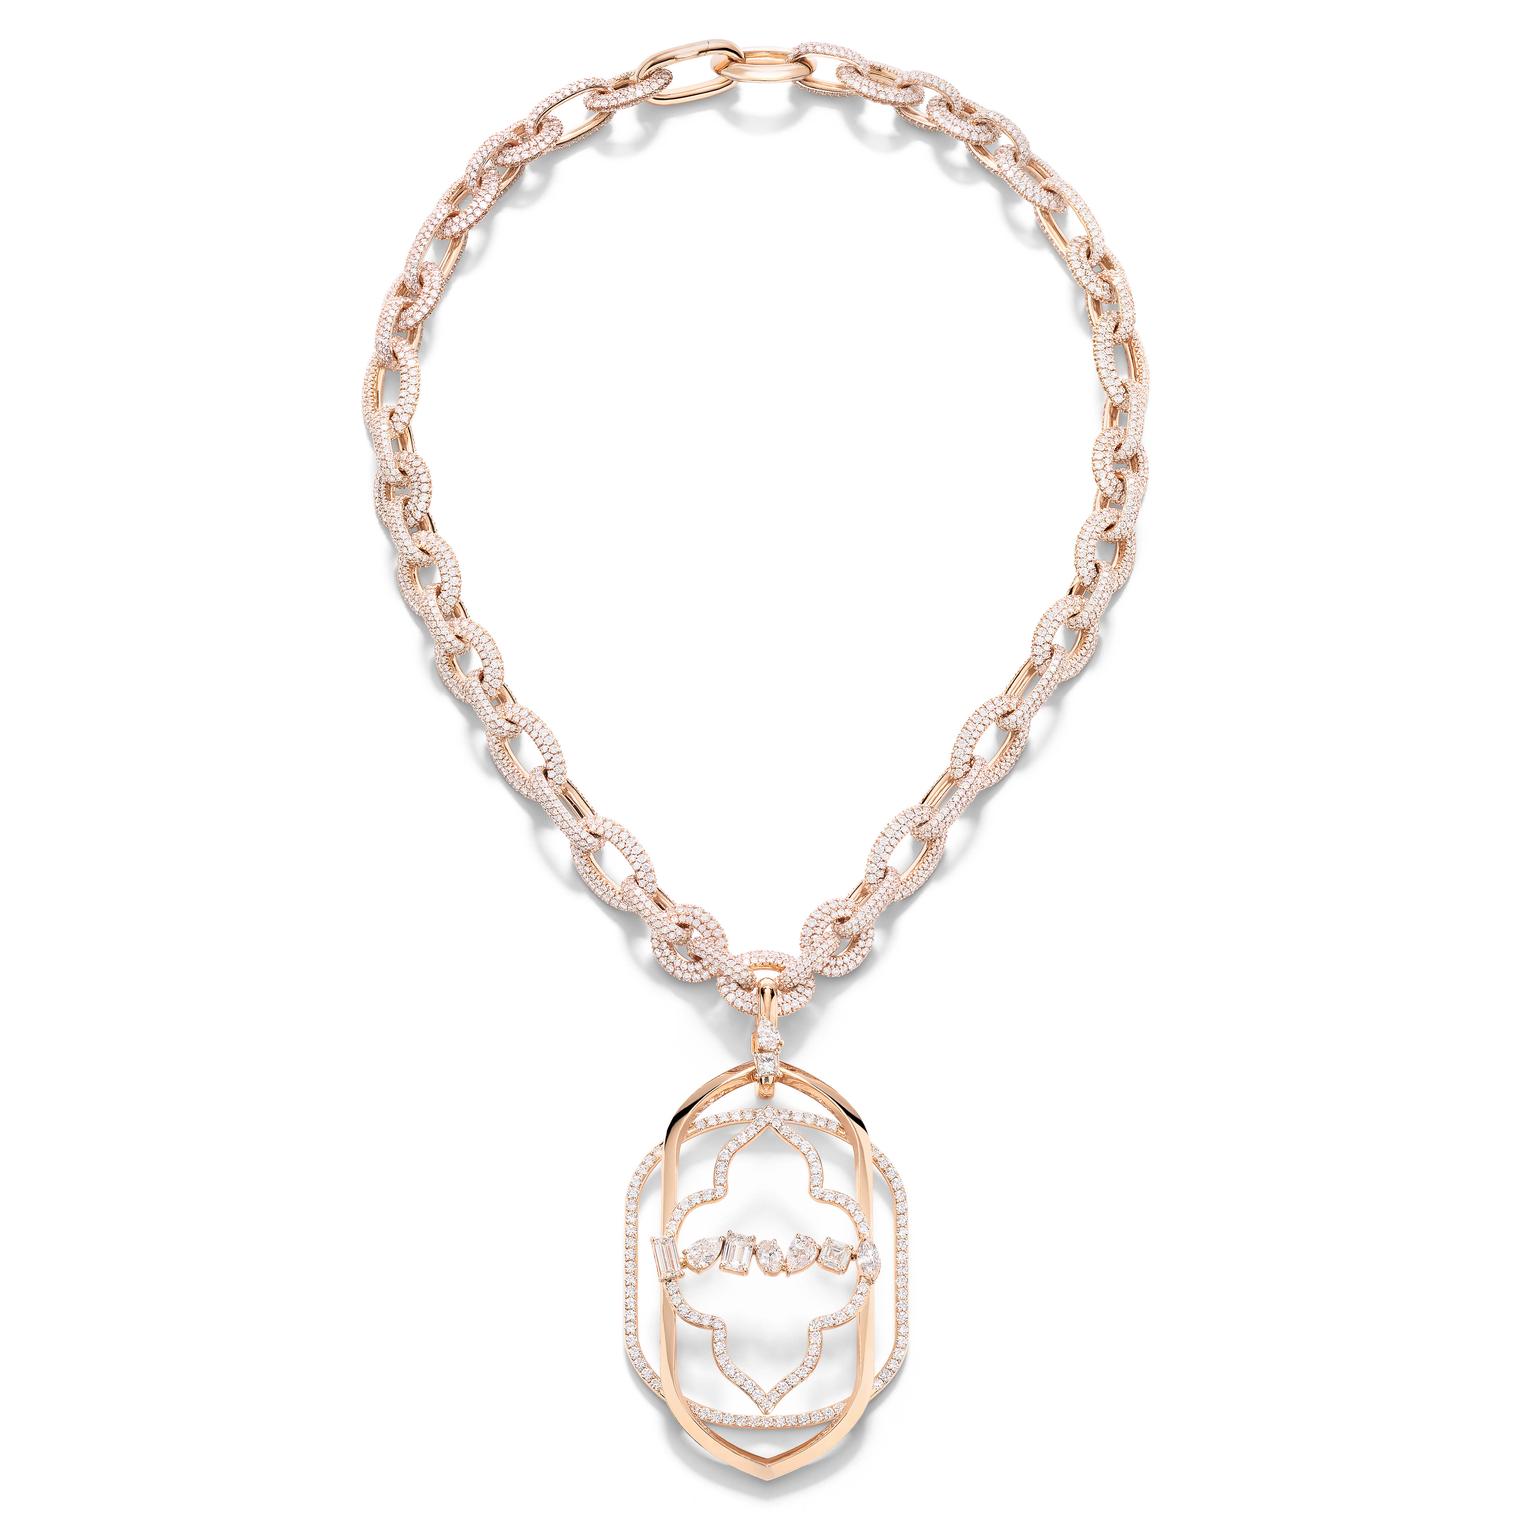 Venetian Dream necklace by Pomellato